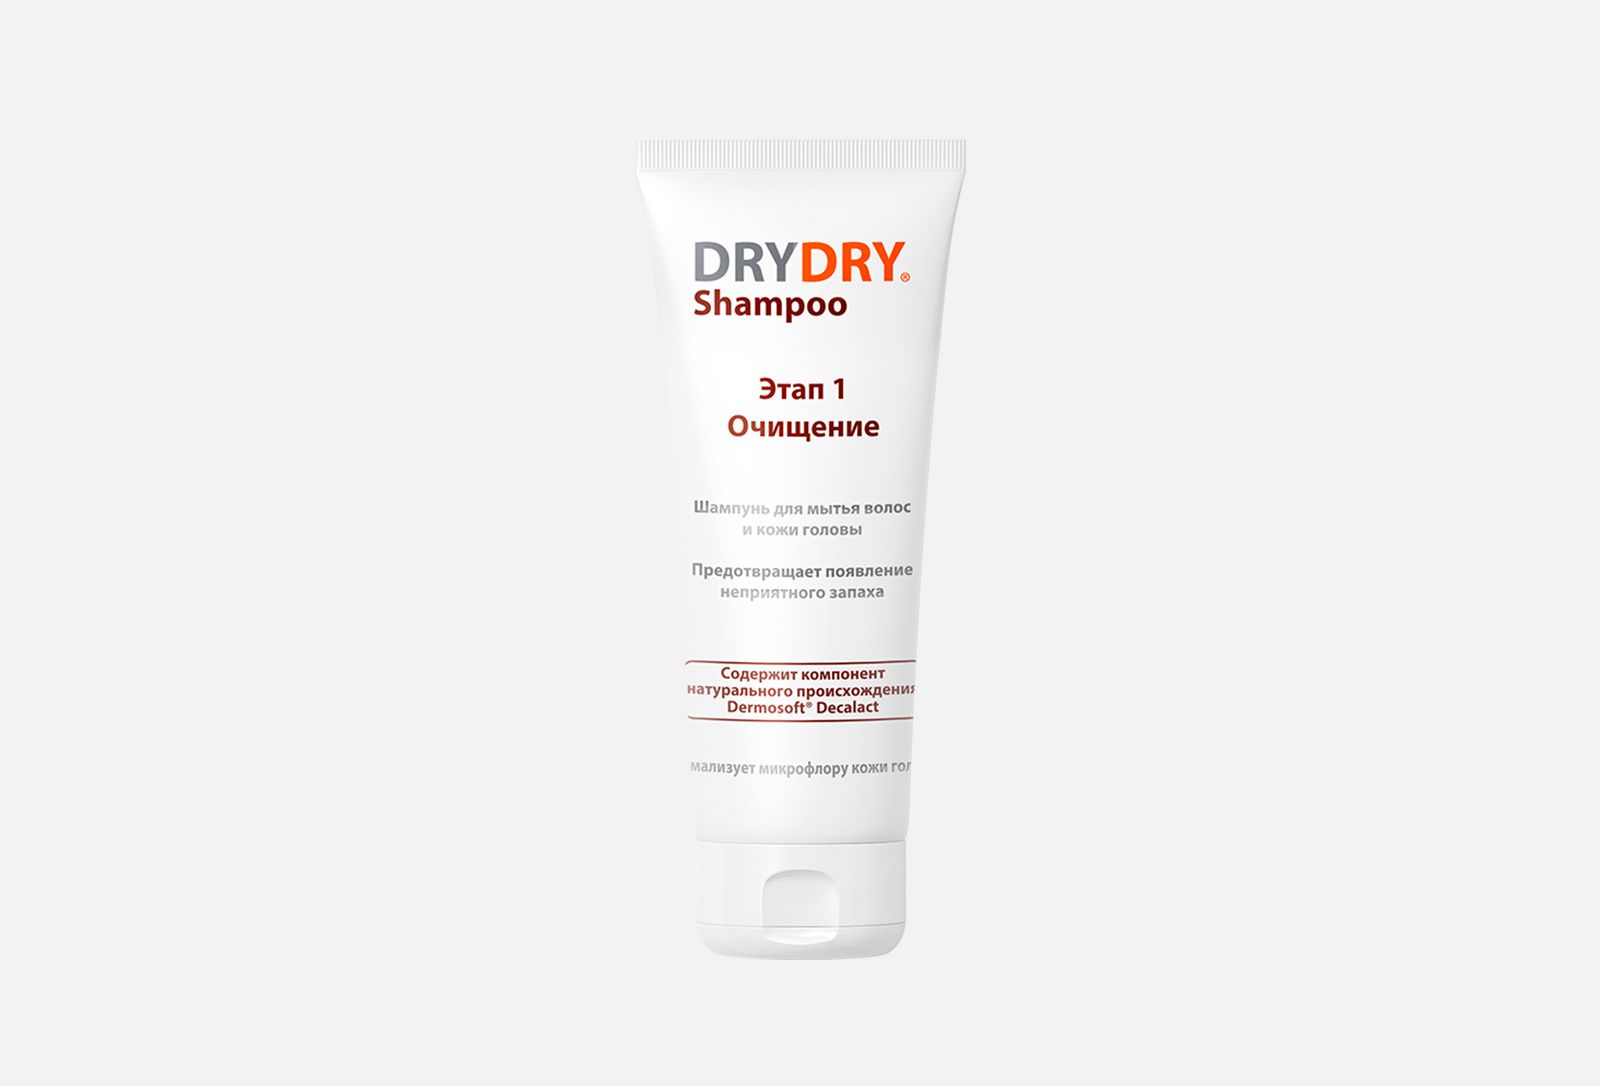 Brans Premium Shampoo - мужской профессиональный шампунь для волос 1000 мл. Dry hair Travel Box (шампунь, кондиционер, гель для тела) 3*100мл. Dry dry shampoo отзывы